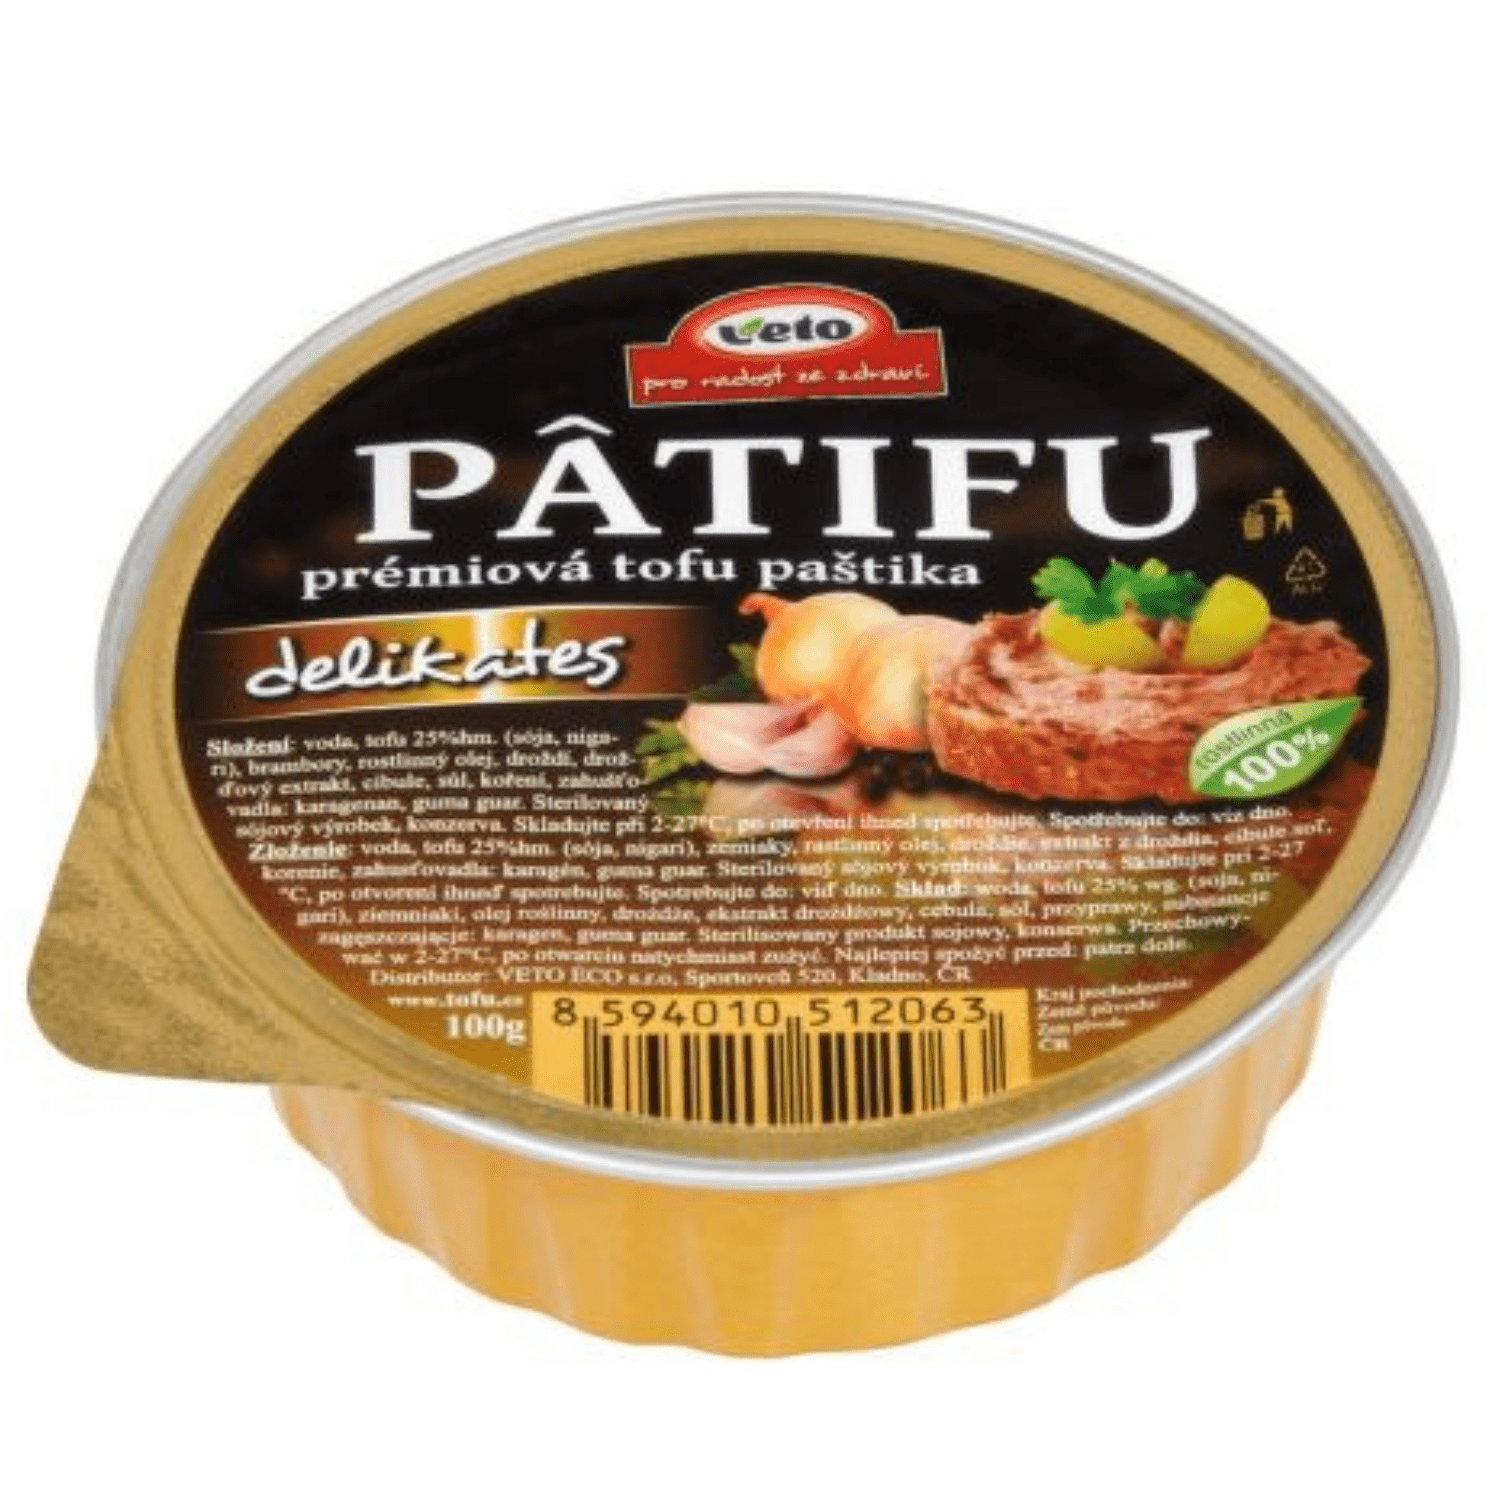 PATIFU - paštéta delikates (100g)